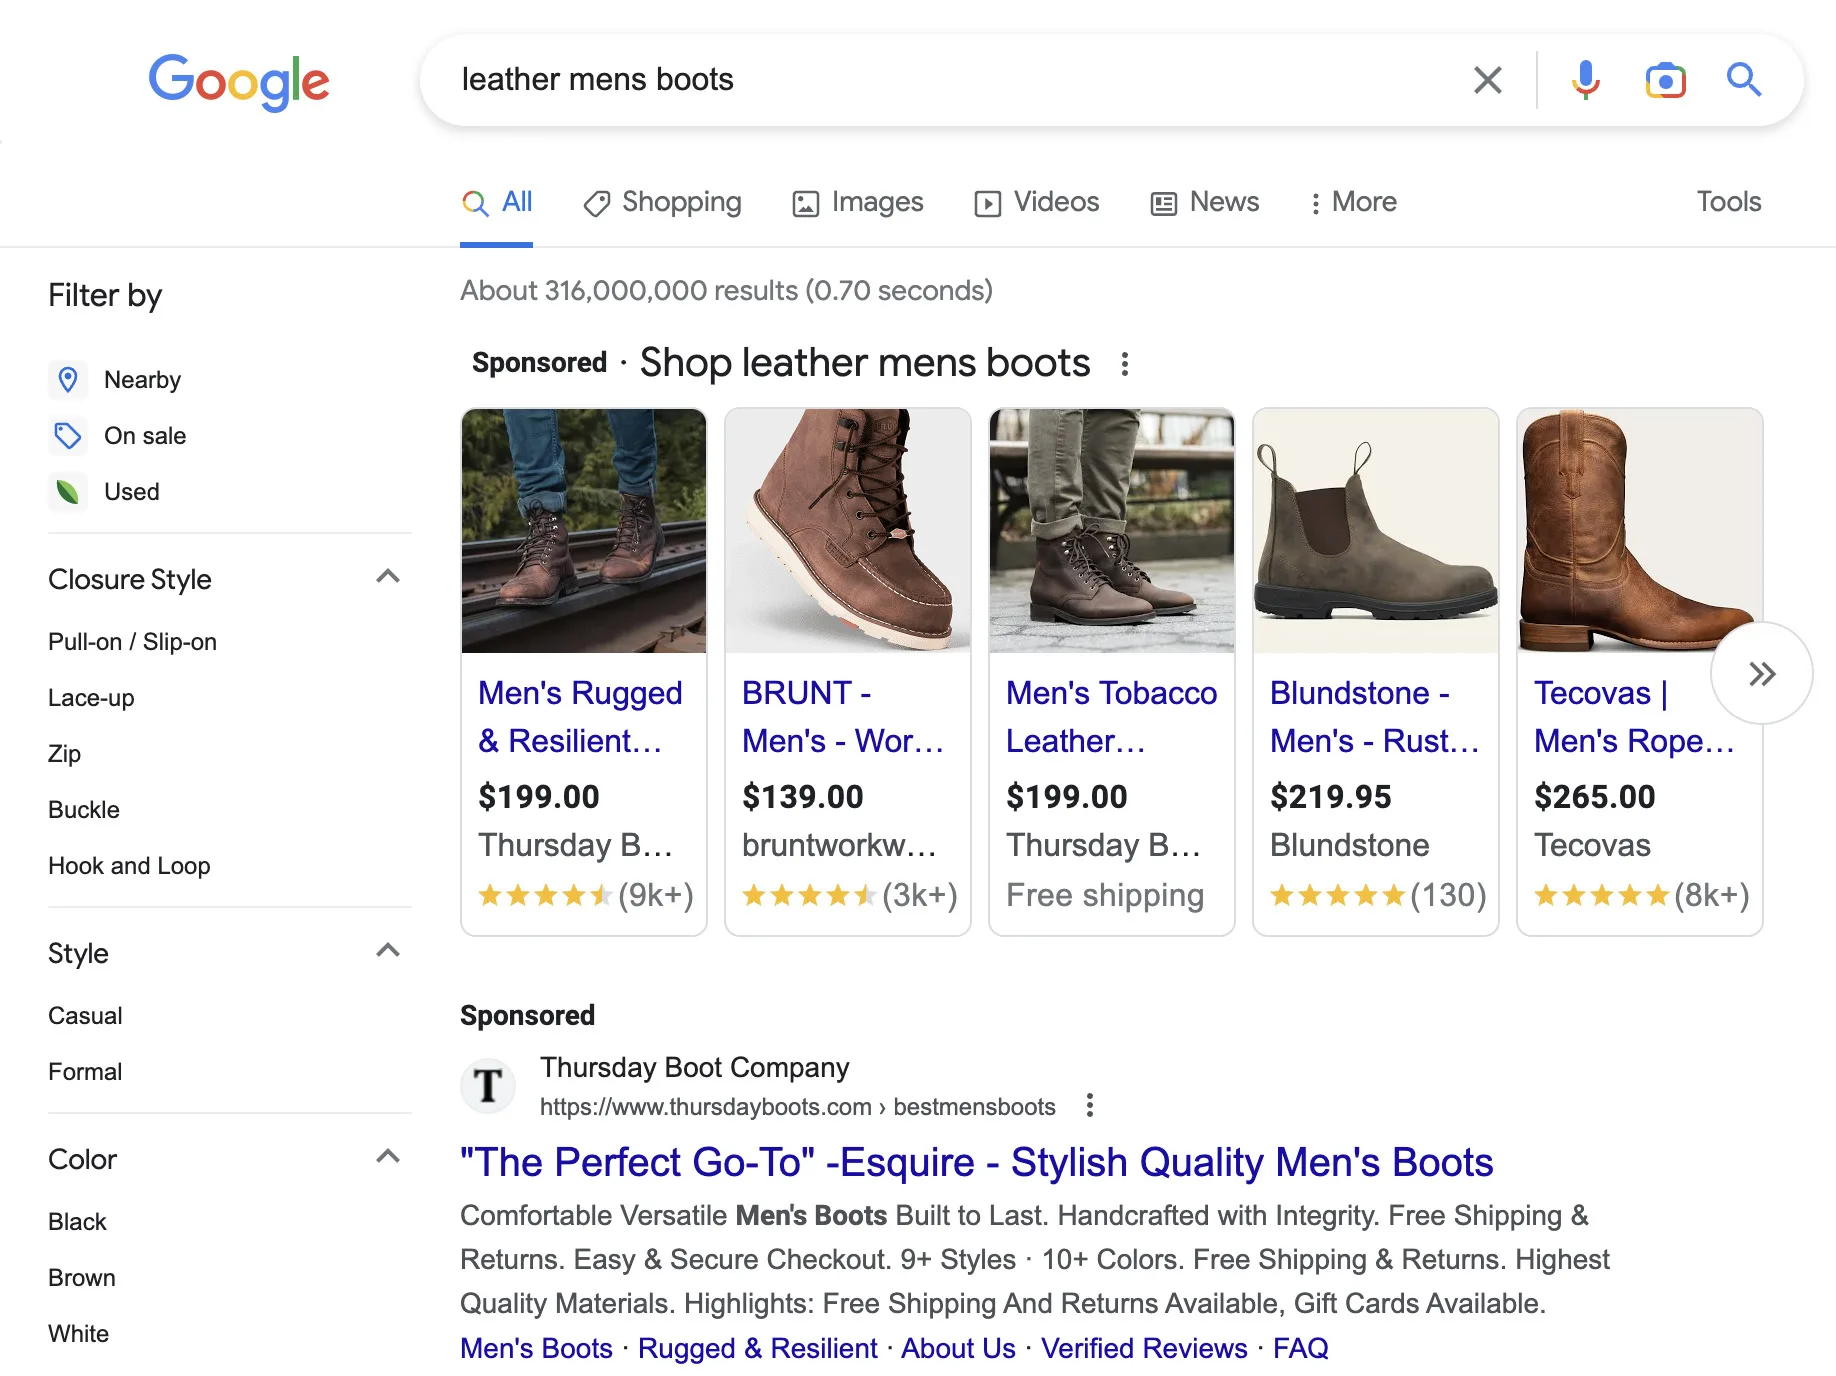 نتائج بحث Google عن "أحذية جلدية للرجال"